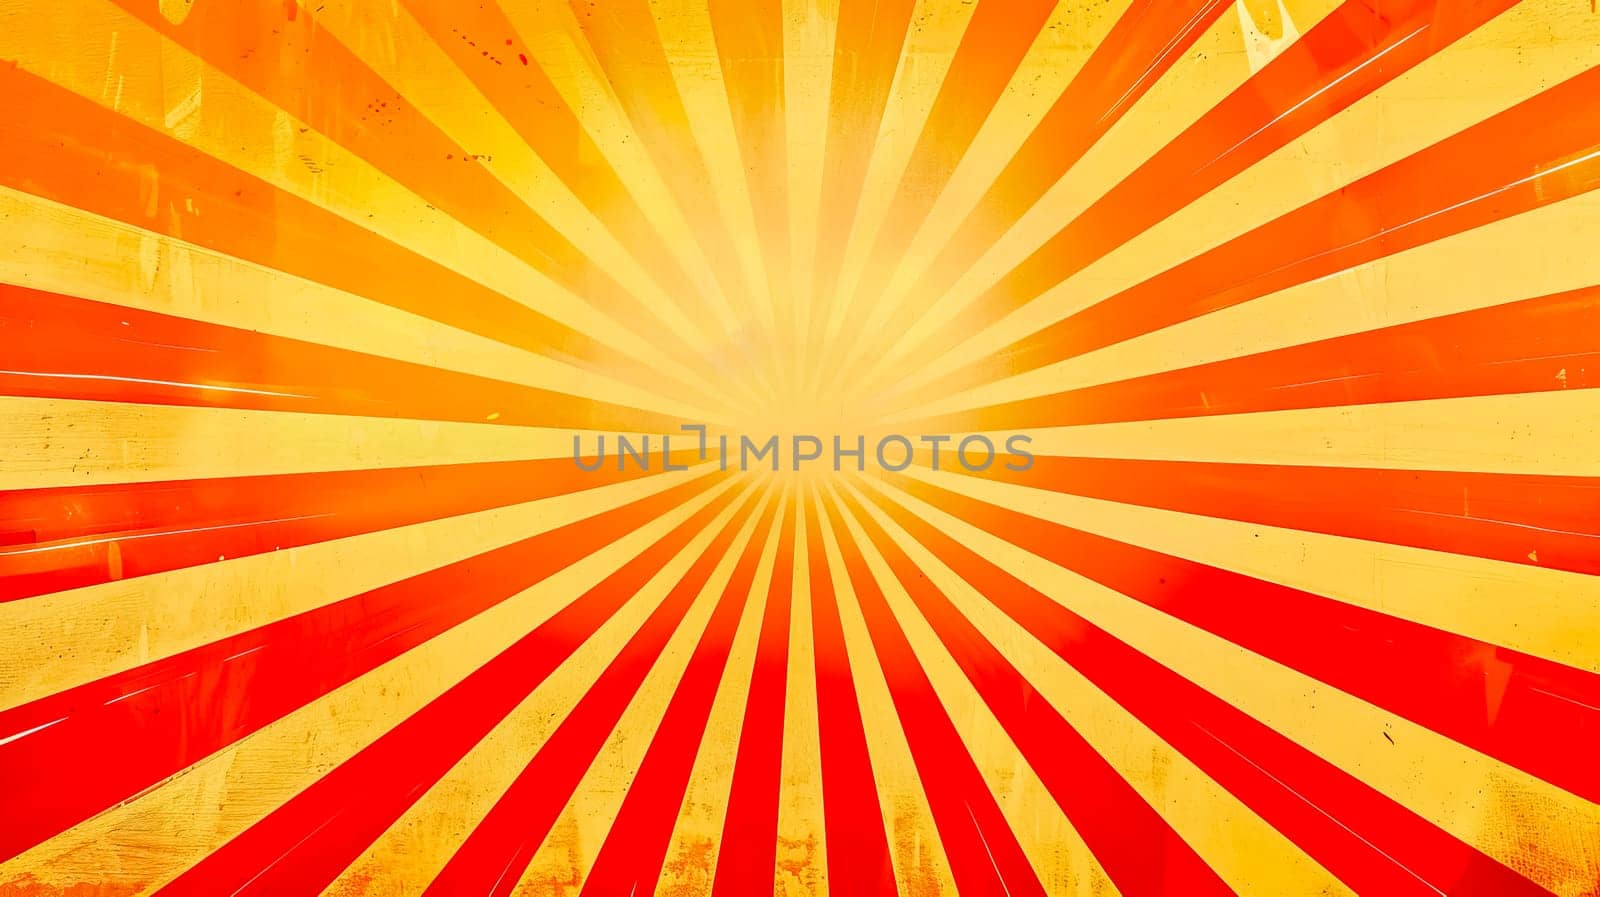 Radiant sunburst background in warm tones by Edophoto